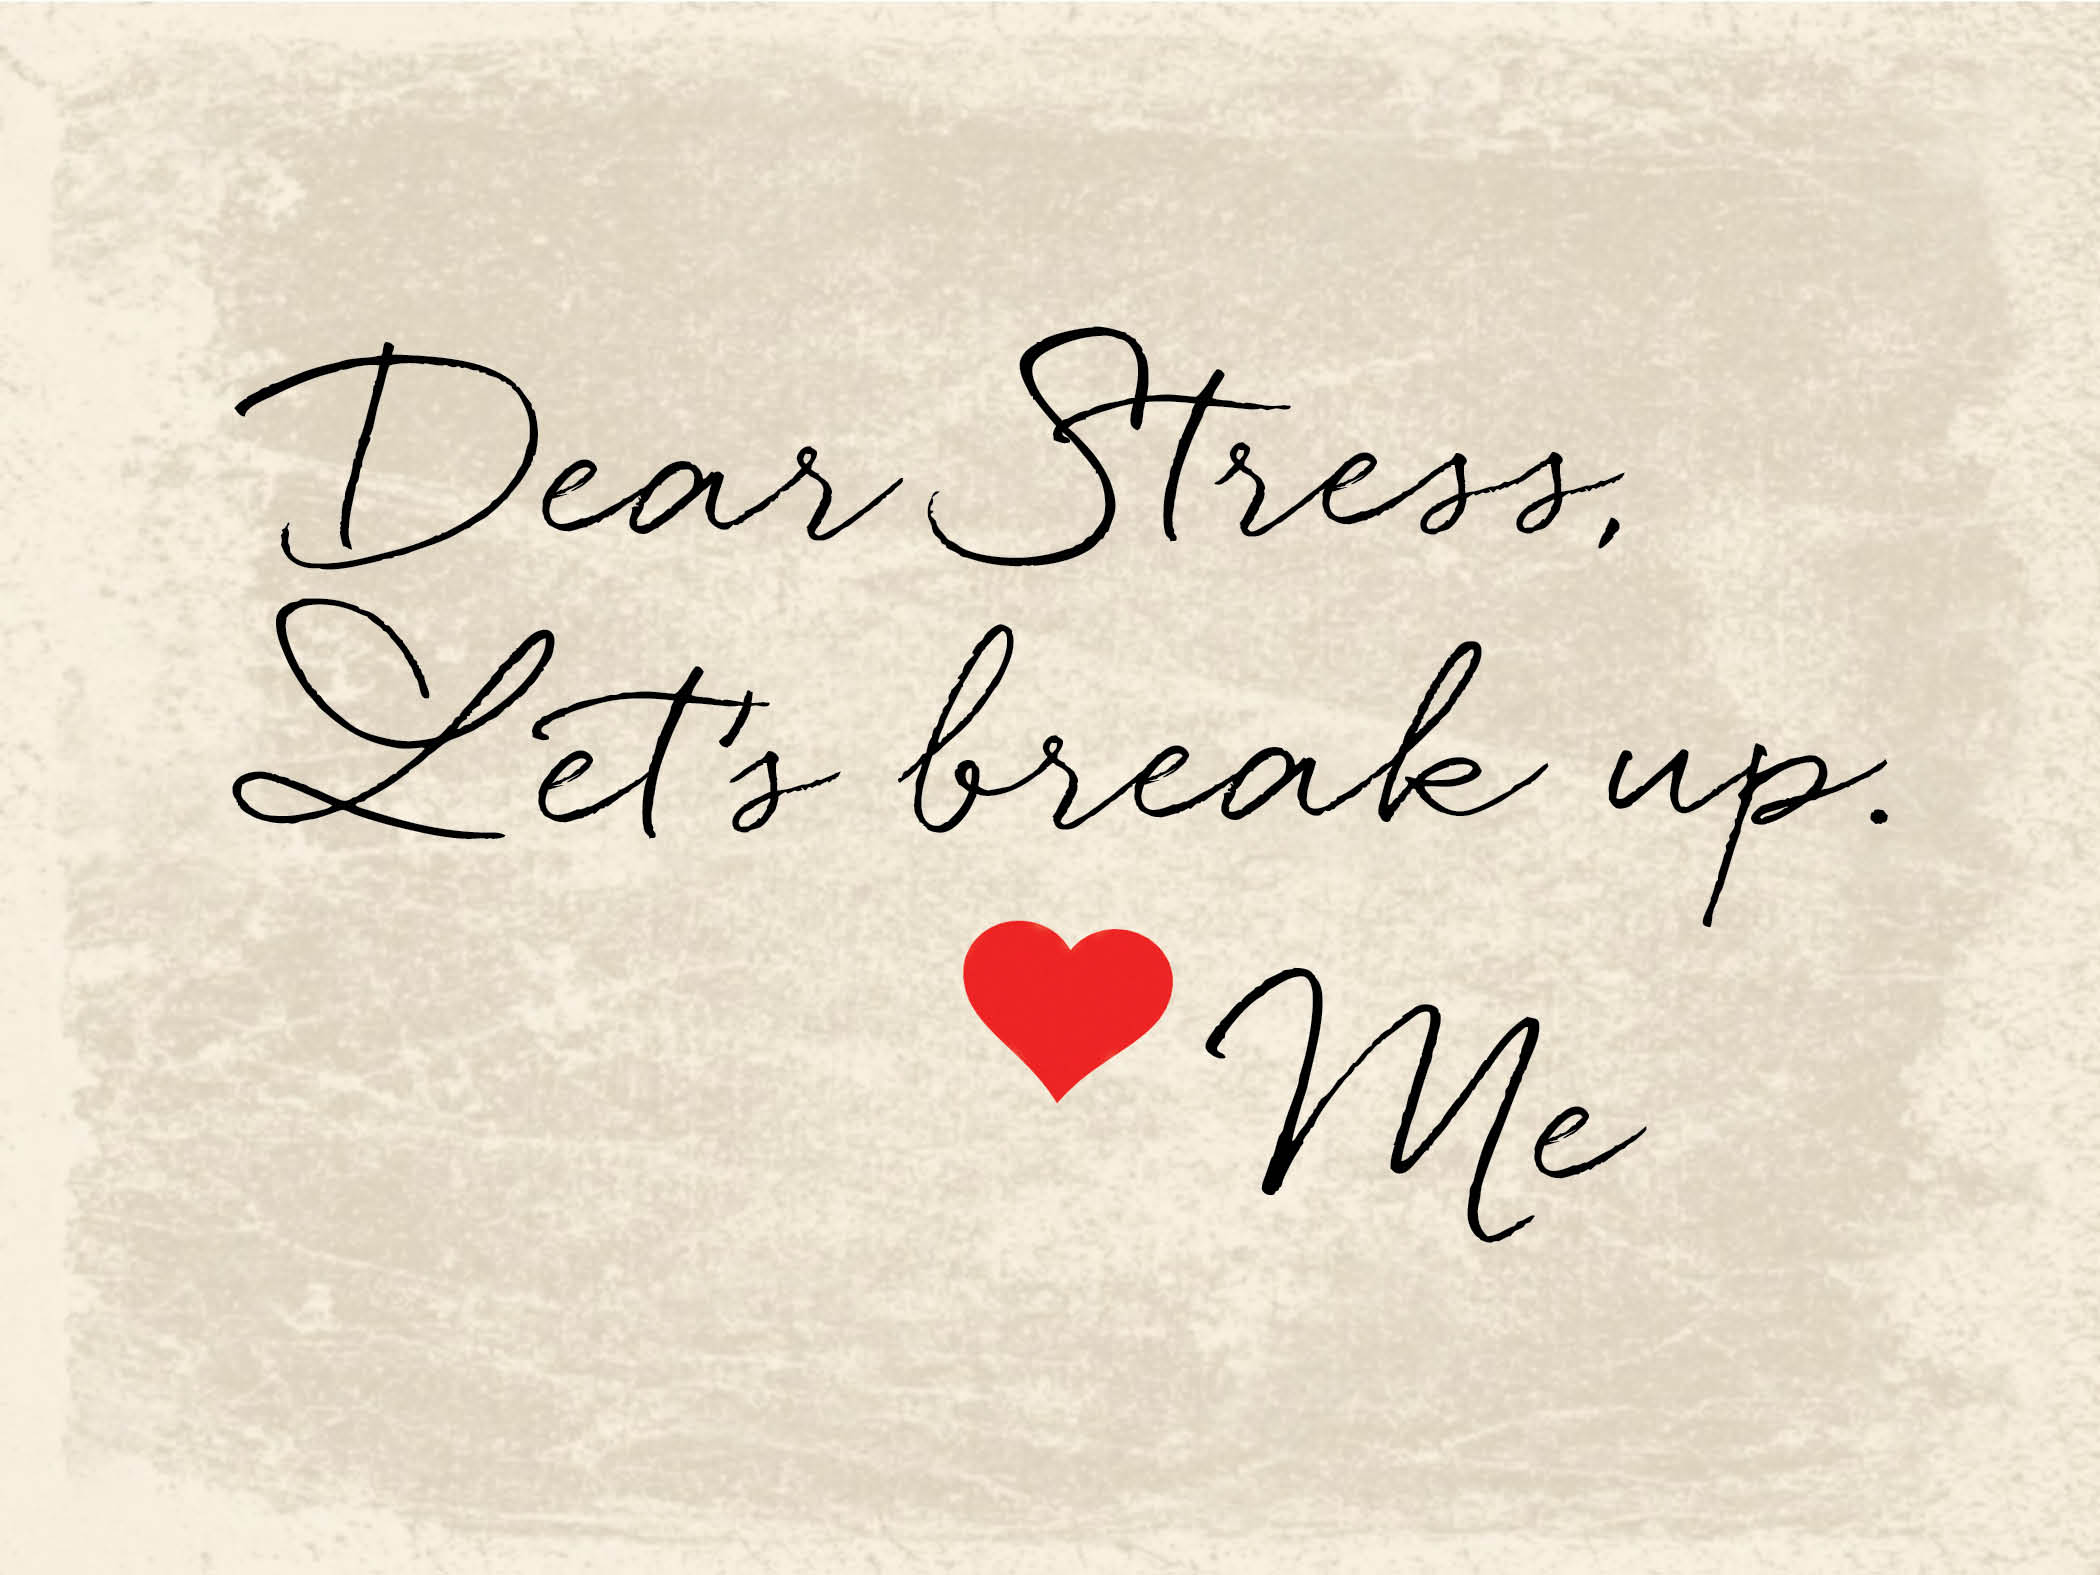 Dear Stress, Let's break up. Me